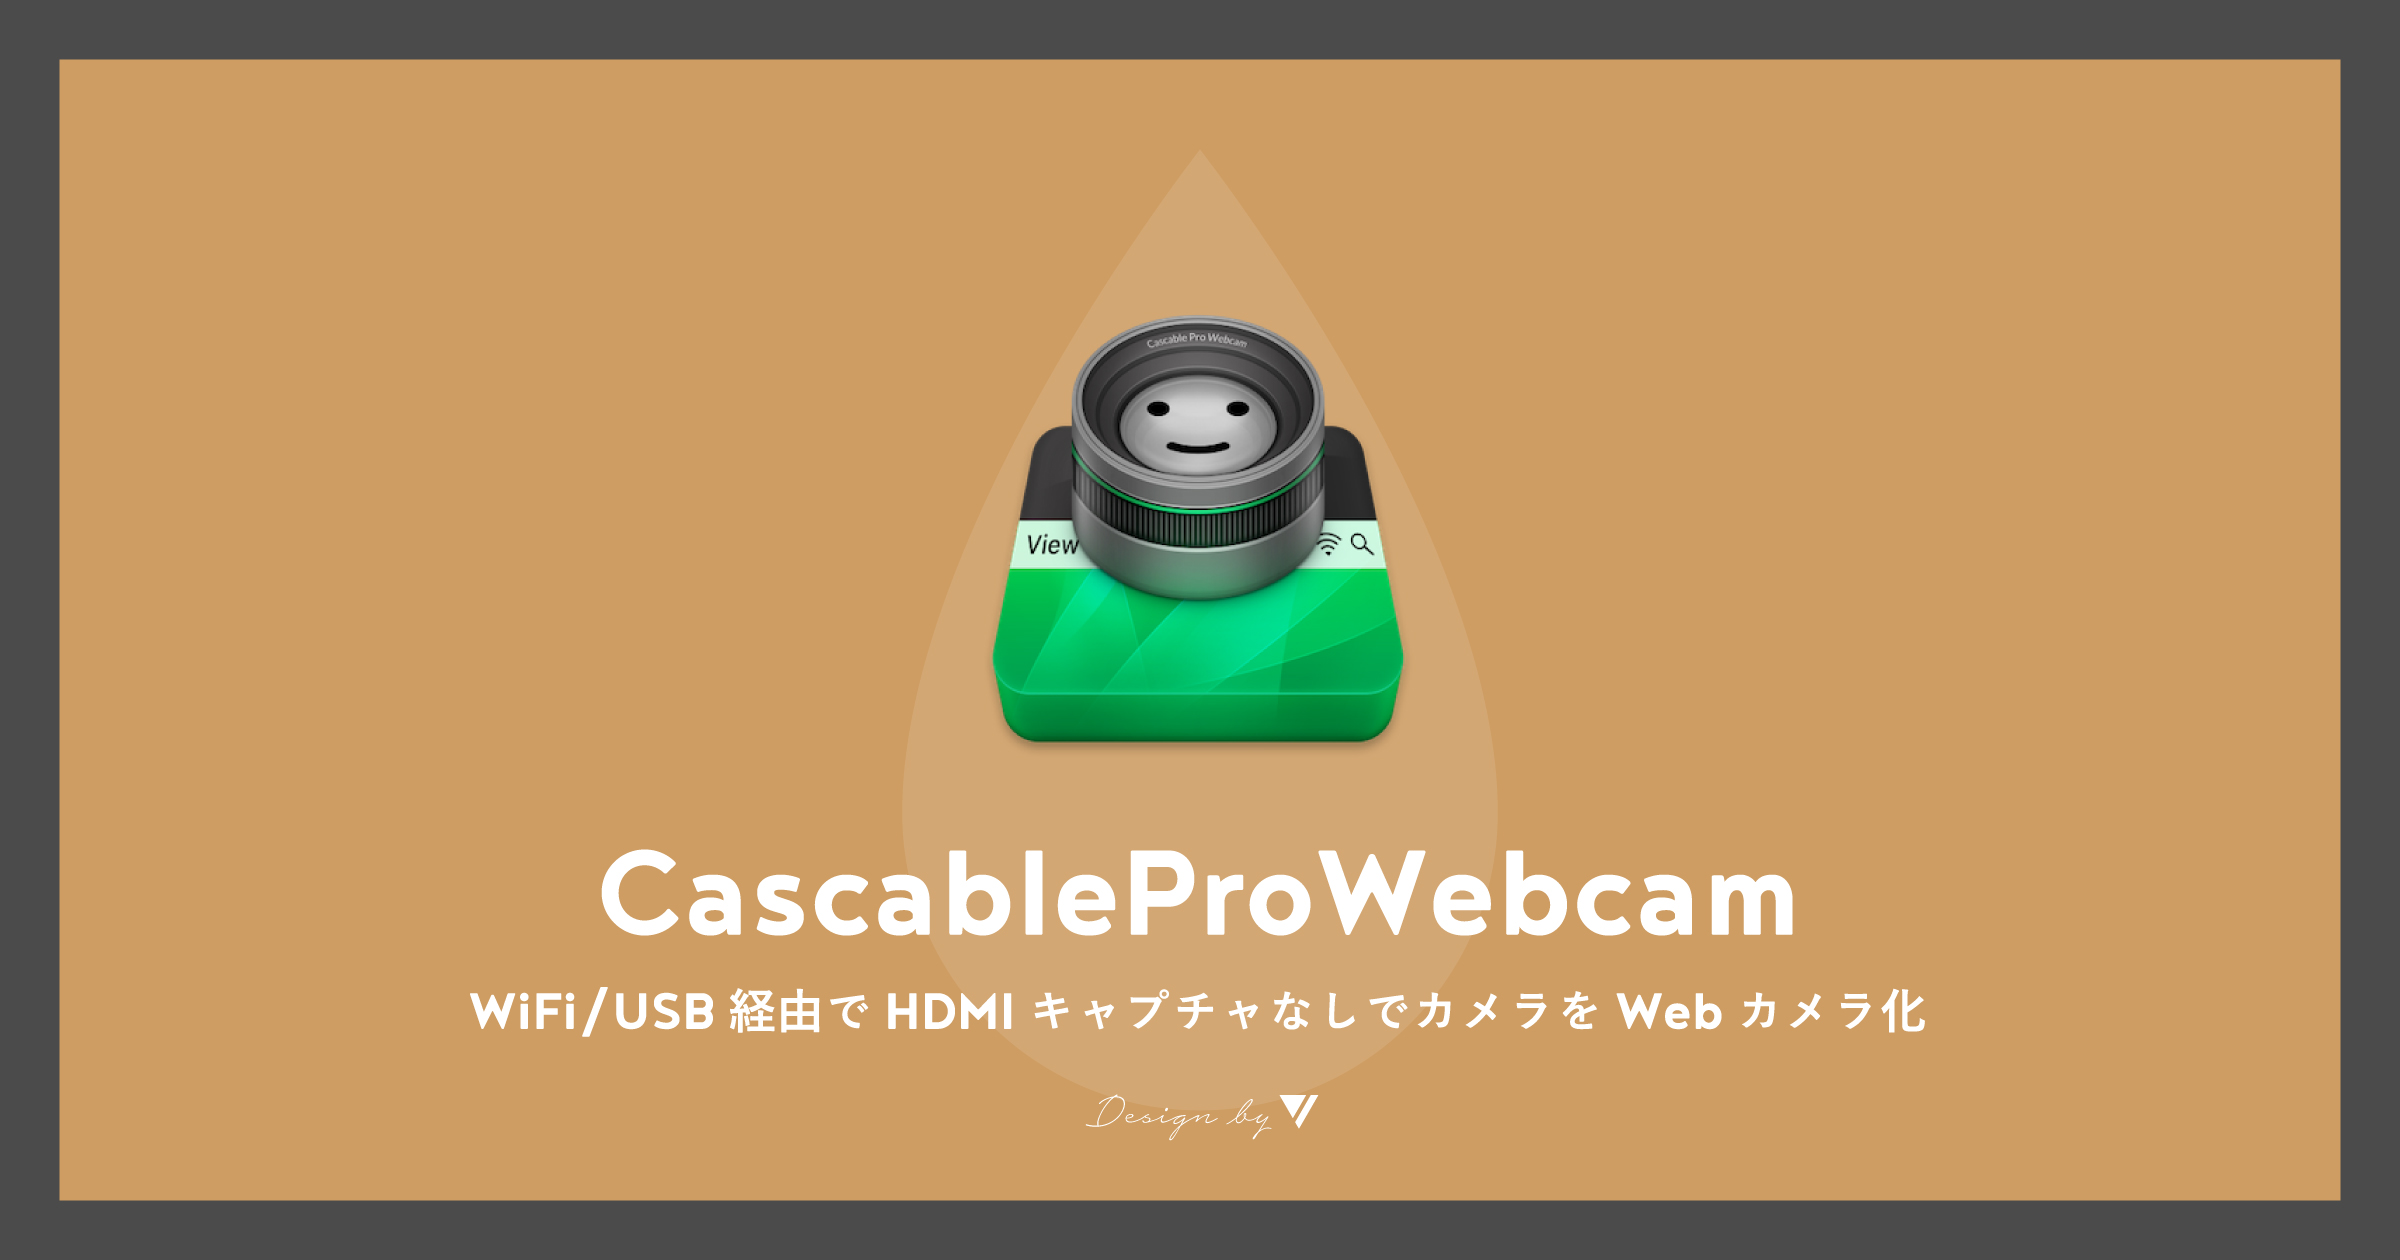 「[Mac]WiFi/USB経由でHDMIキャプチャなしでカメラをWebカメラ化できるCascableProWebcam」のアイキャッチ画像